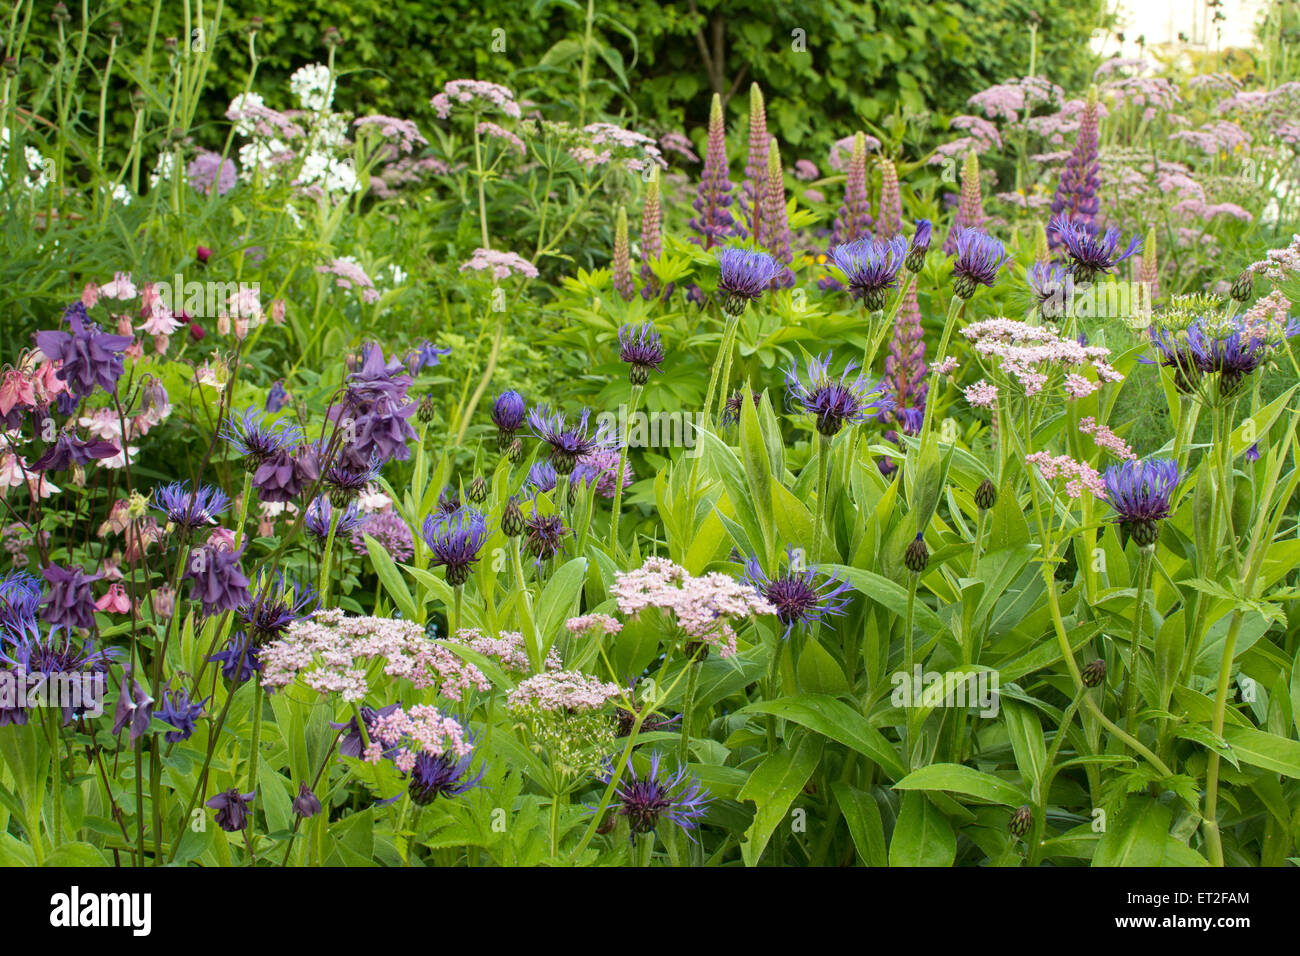 Frühsommer Rabatte in den kühlen Farben blau, lila, rosa und weiß - Schottland, UK Stockfoto